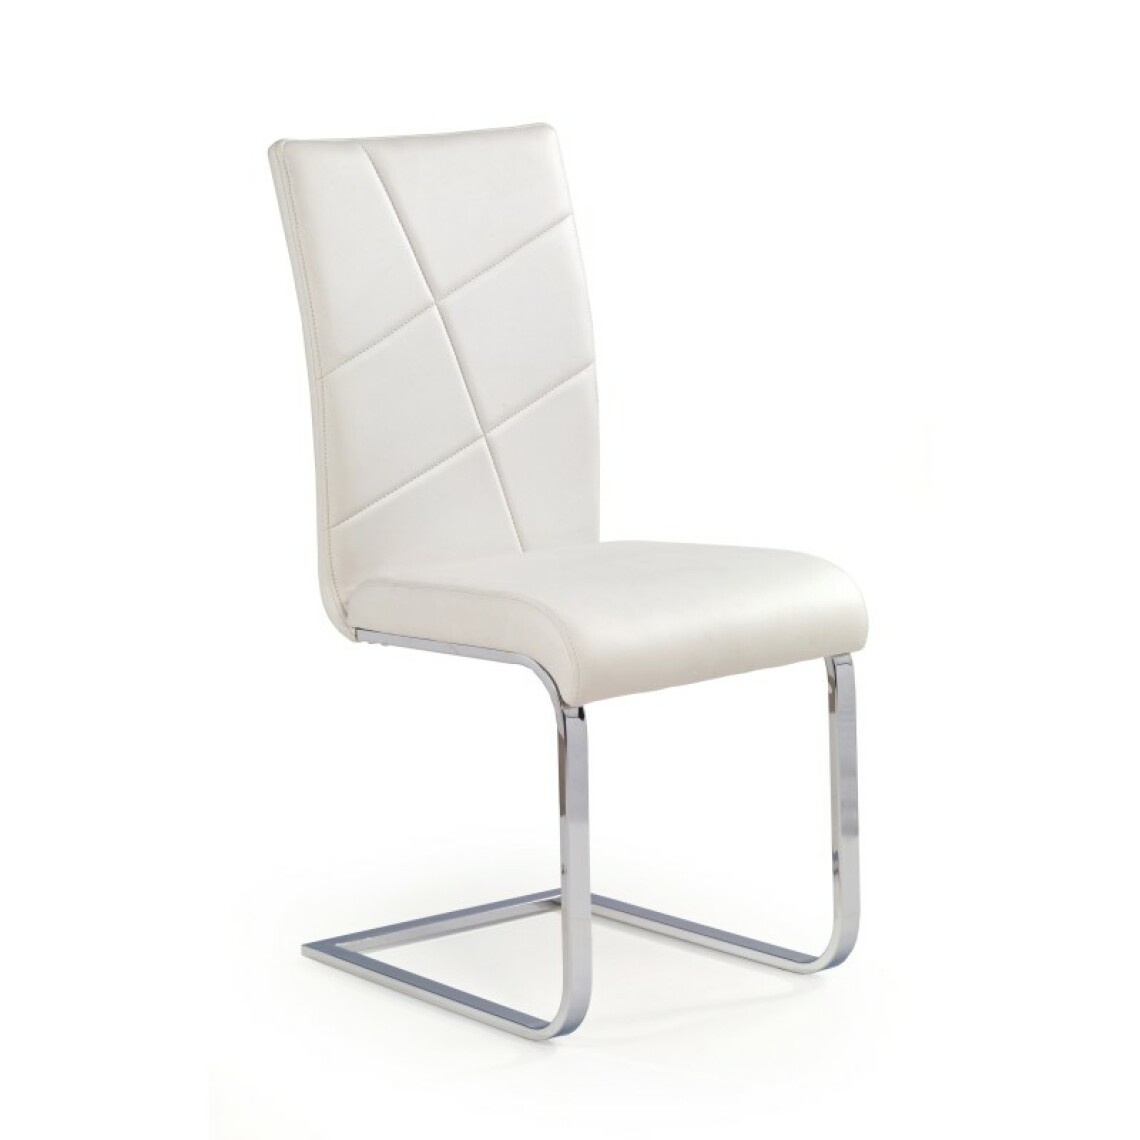 Carellia - ETIENNE chaise en cuir synthétique - Blanc - Chaises